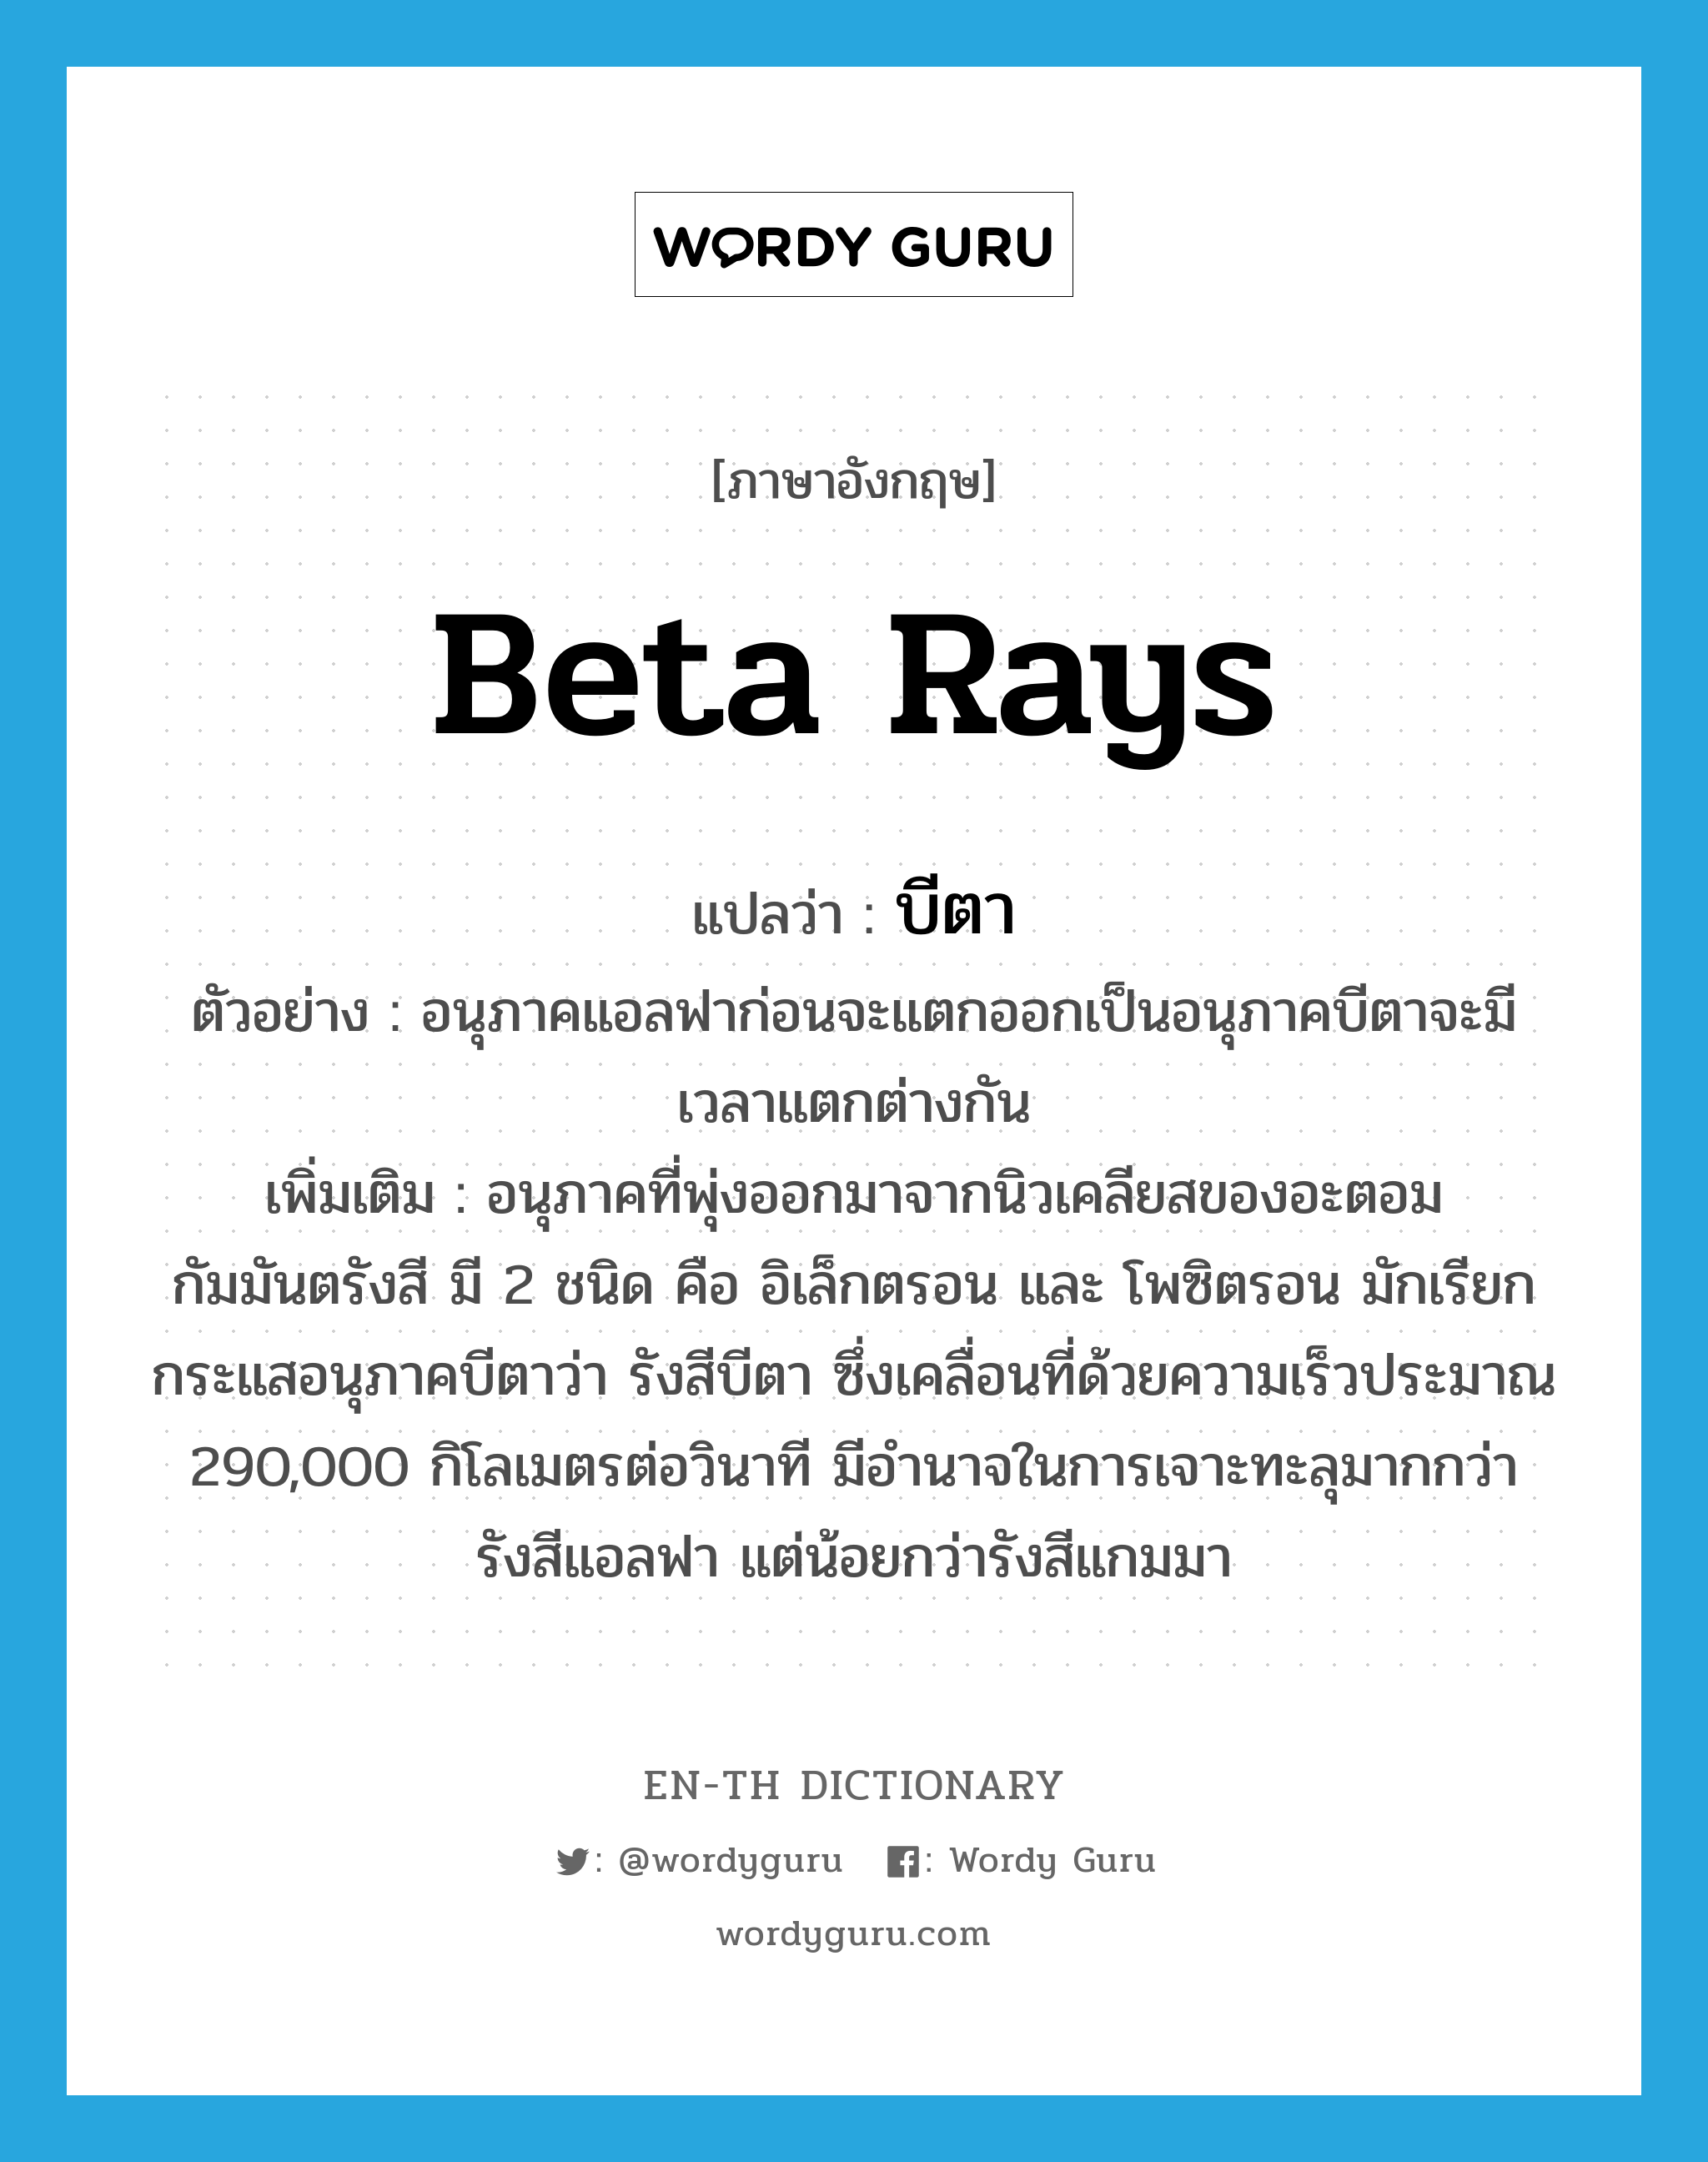 beta rays แปลว่า?, คำศัพท์ภาษาอังกฤษ beta rays แปลว่า บีตา ประเภท N ตัวอย่าง อนุภาคแอลฟาก่อนจะแตกออกเป็นอนุภาคบีตาจะมีเวลาแตกต่างกัน เพิ่มเติม อนุภาคที่พุ่งออกมาจากนิวเคลียสของอะตอมกัมมันตรังสี มี 2 ชนิด คือ อิเล็กตรอน และ โพซิตรอน มักเรียกกระแสอนุภาคบีตาว่า รังสีบีตา ซึ่งเคลื่อนที่ด้วยความเร็วประมาณ 290,000 กิโลเมตรต่อวินาที มีอำนาจในการเจาะทะลุมากกว่ารังสีแอลฟา แต่น้อยกว่ารังสีแกมมา หมวด N